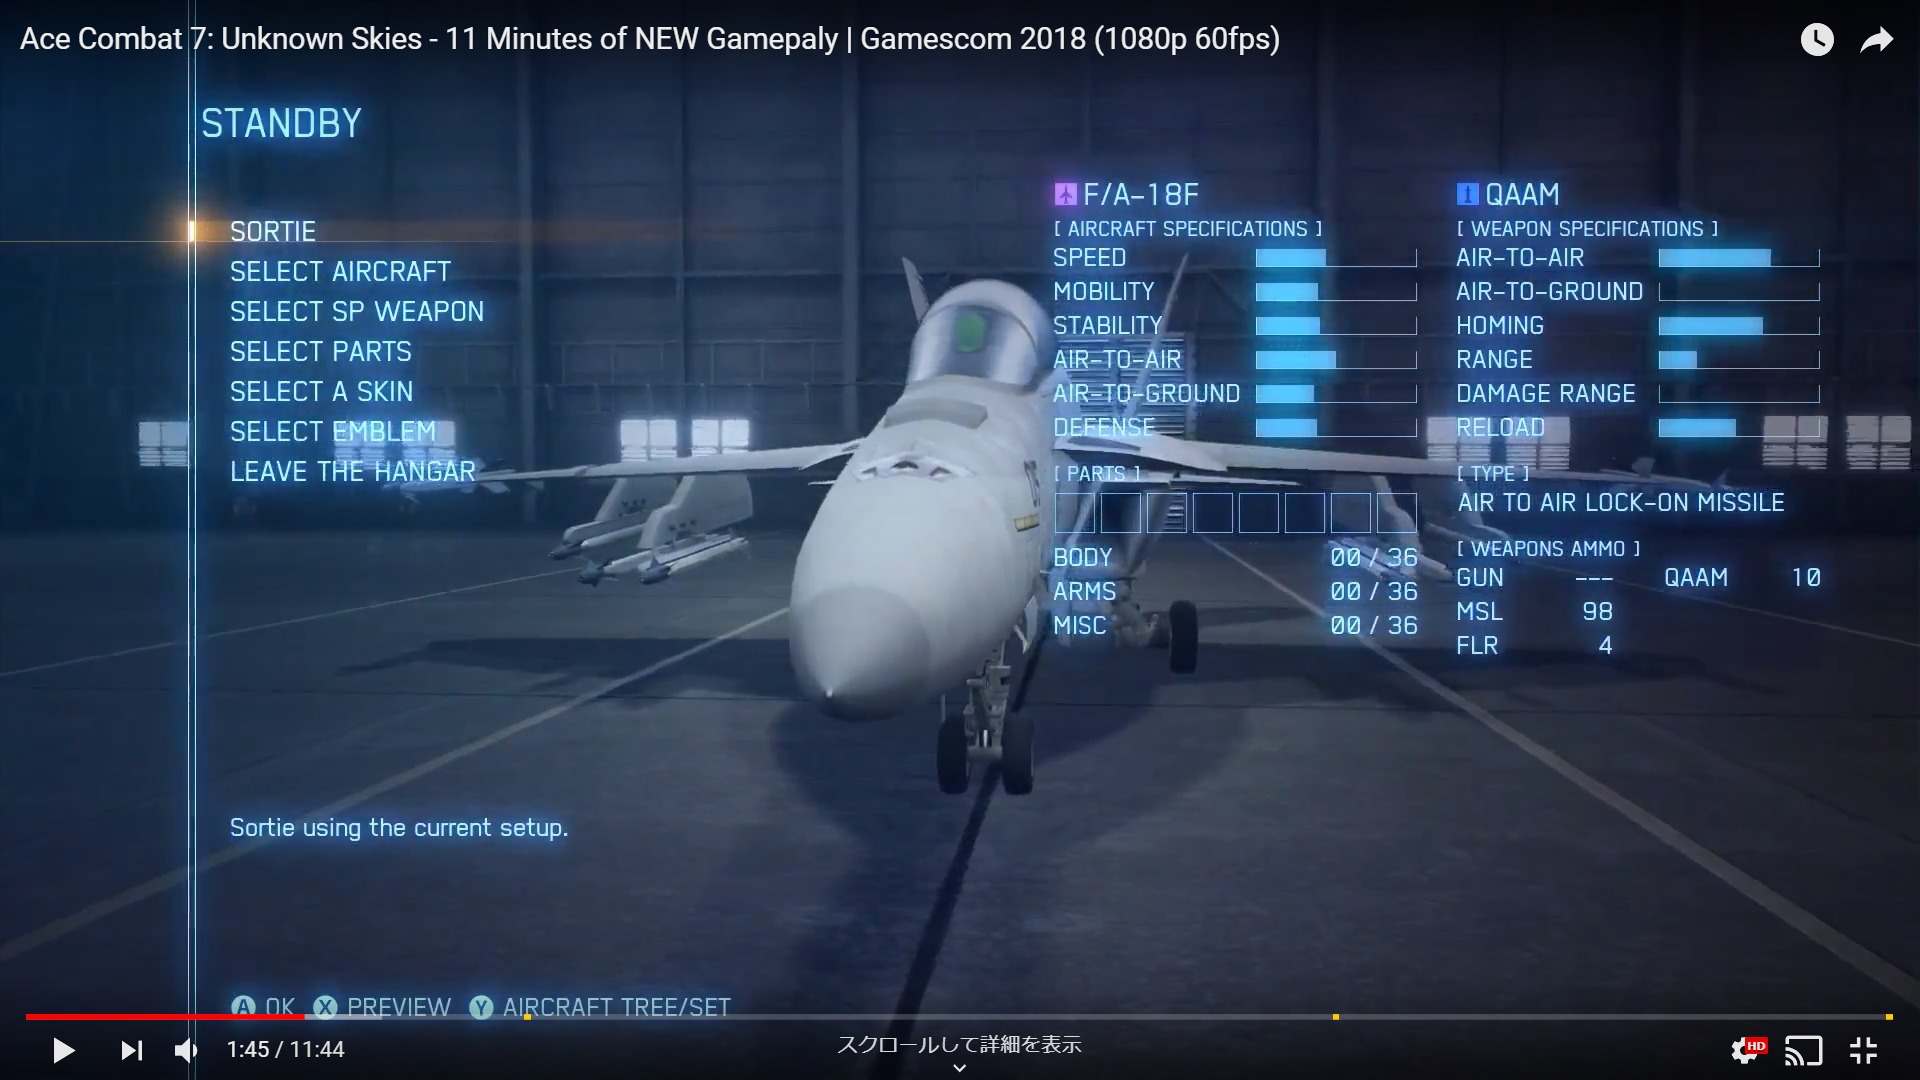 ７ミッション６プレイ動画を長編公開 またバンナムエンターテイメントヨーロッパがやってくれた エースコンバット7 Free Combat的攻略